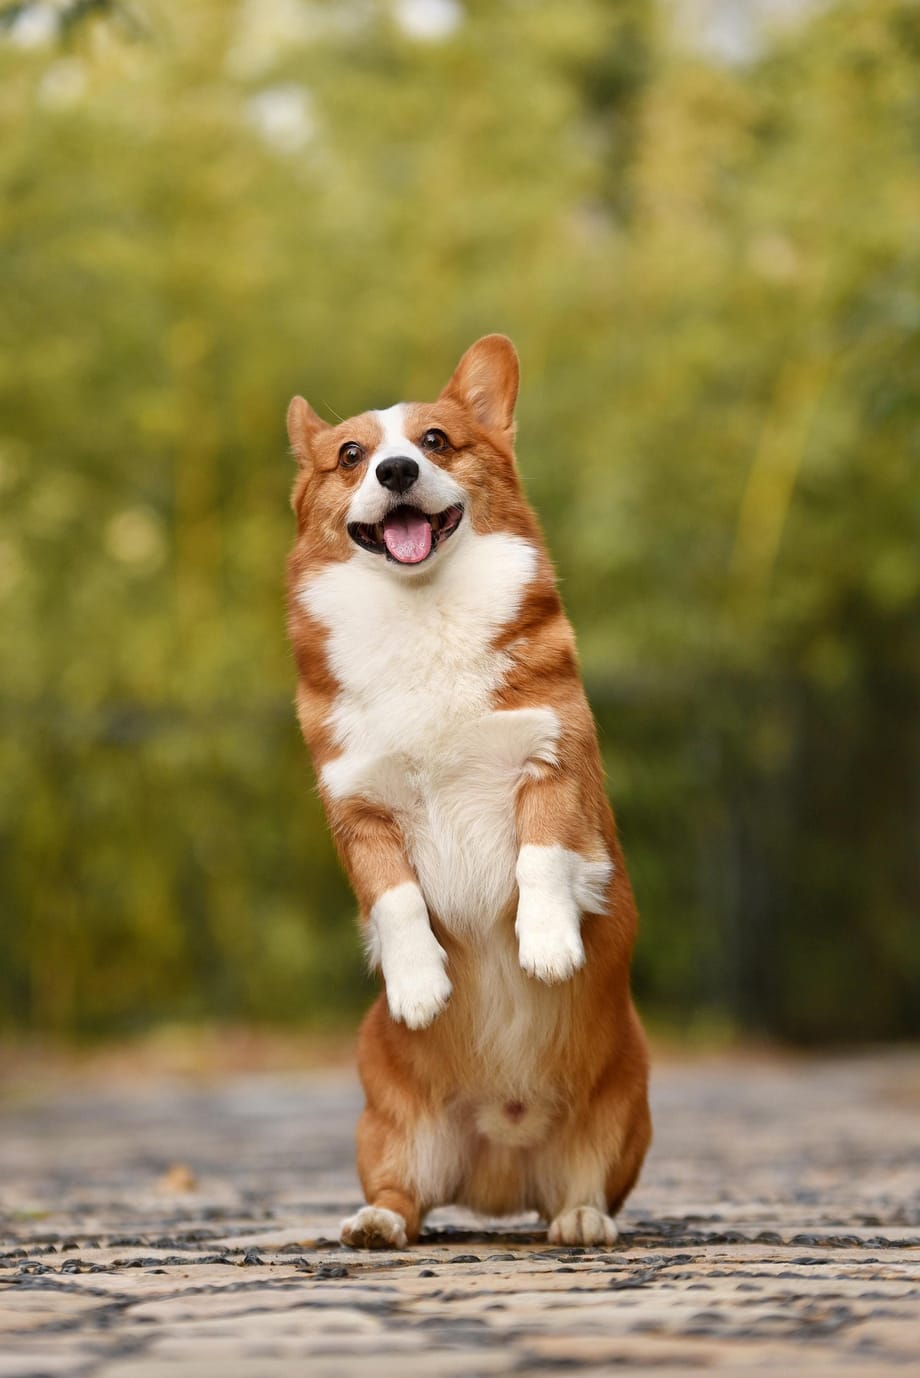 Một con chó đang đứng và cười với đôi chân trước của nó